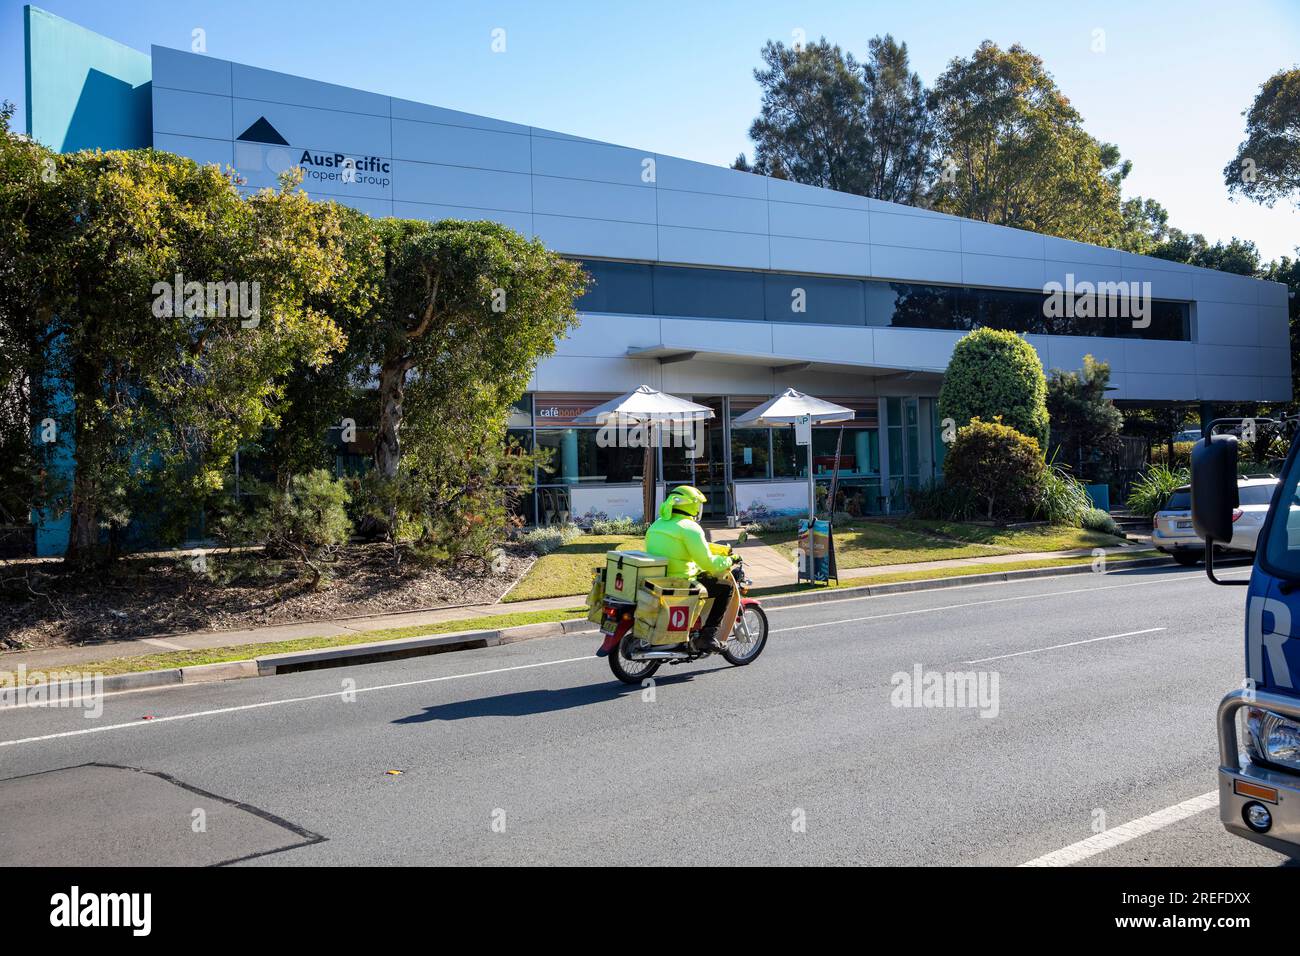 Australia Post, Postbote, die mit Honda Motorrad unterwegs sind, wenn sie Post und Post liefern, Sydney, NSW, Australien Stockfoto